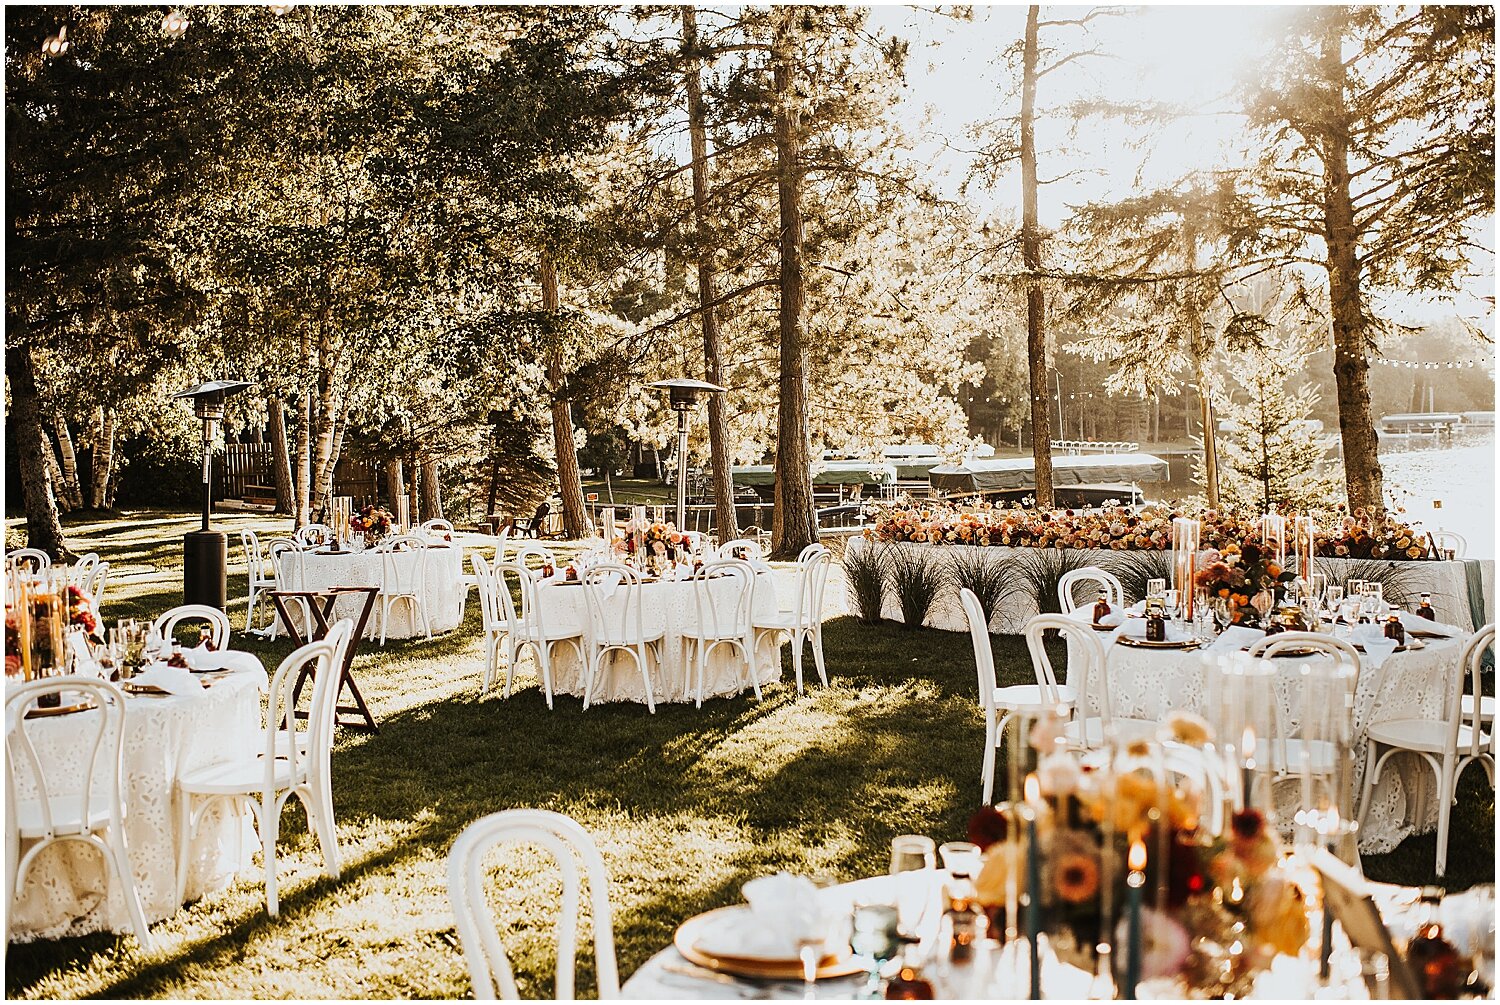  outdoor wedding reception 